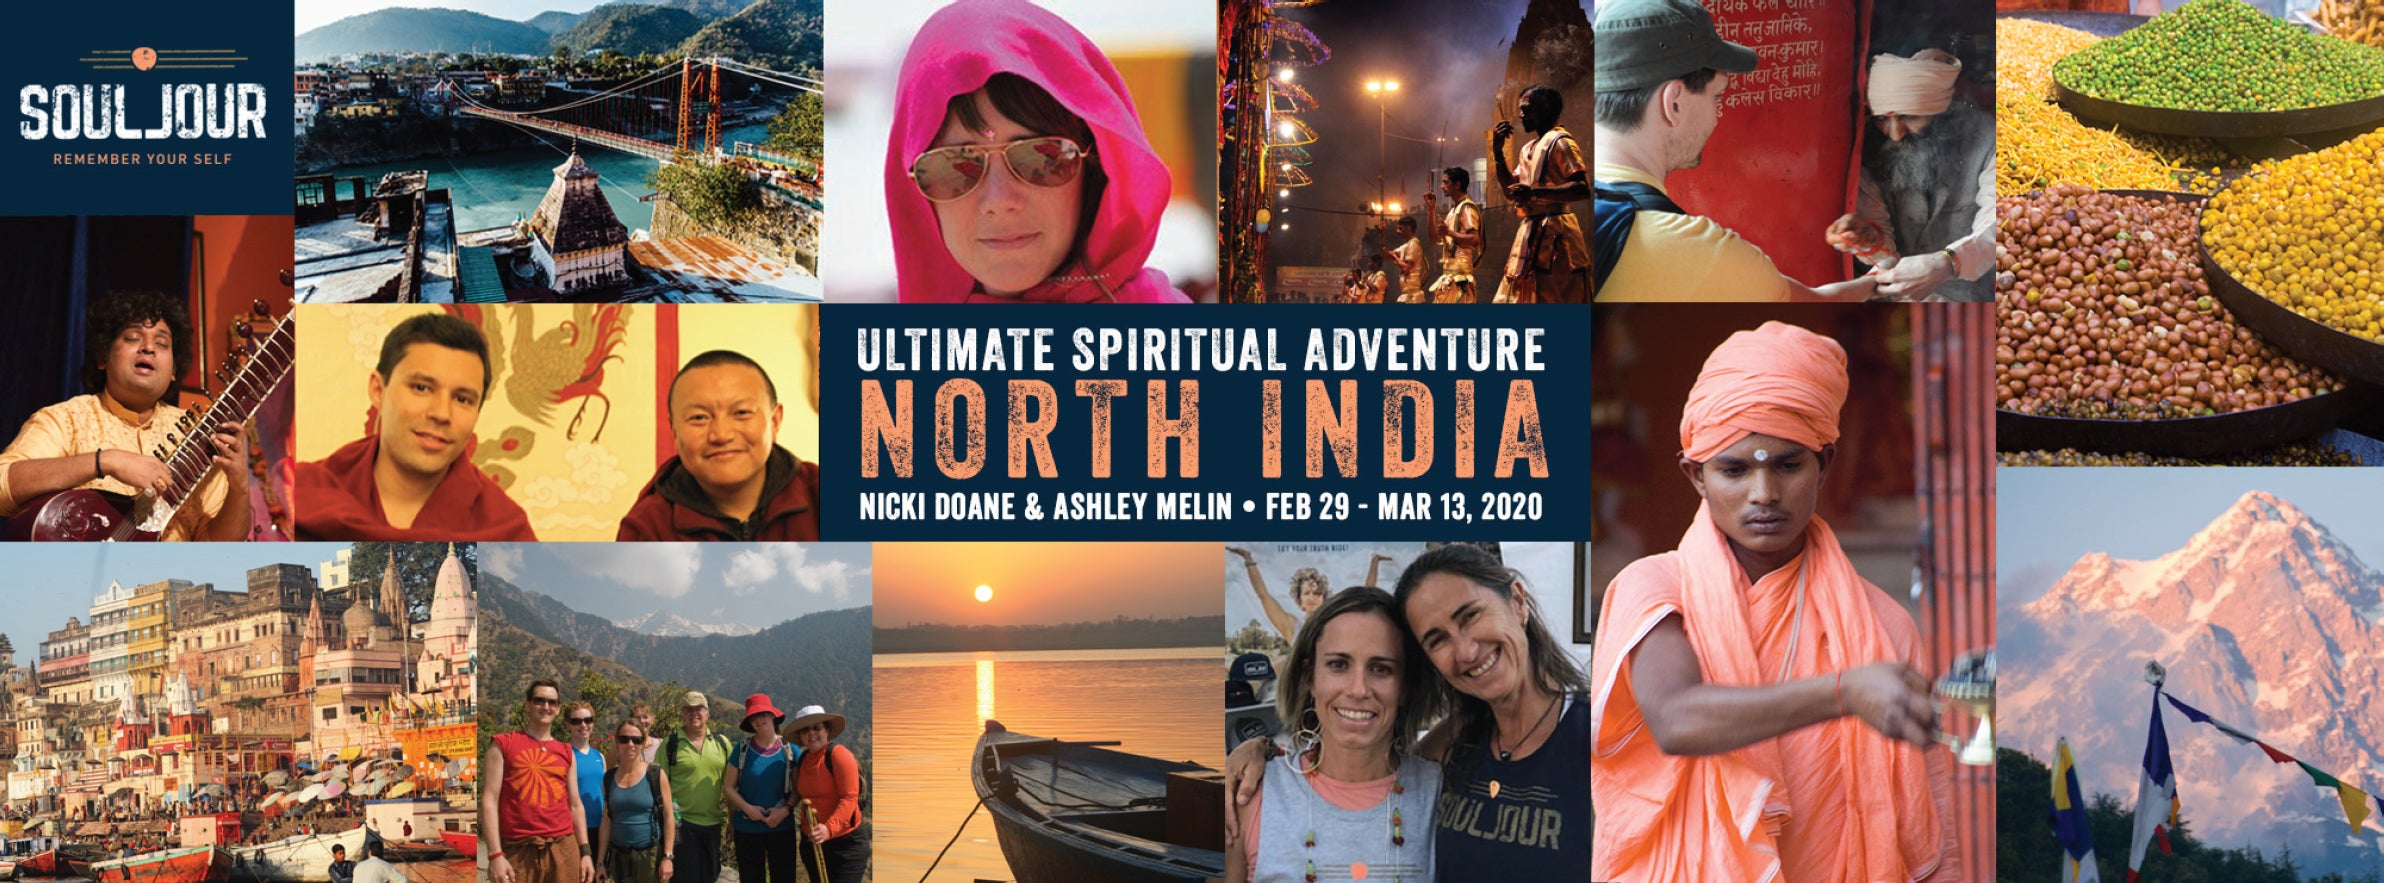 North India Adventure Yoga Trip